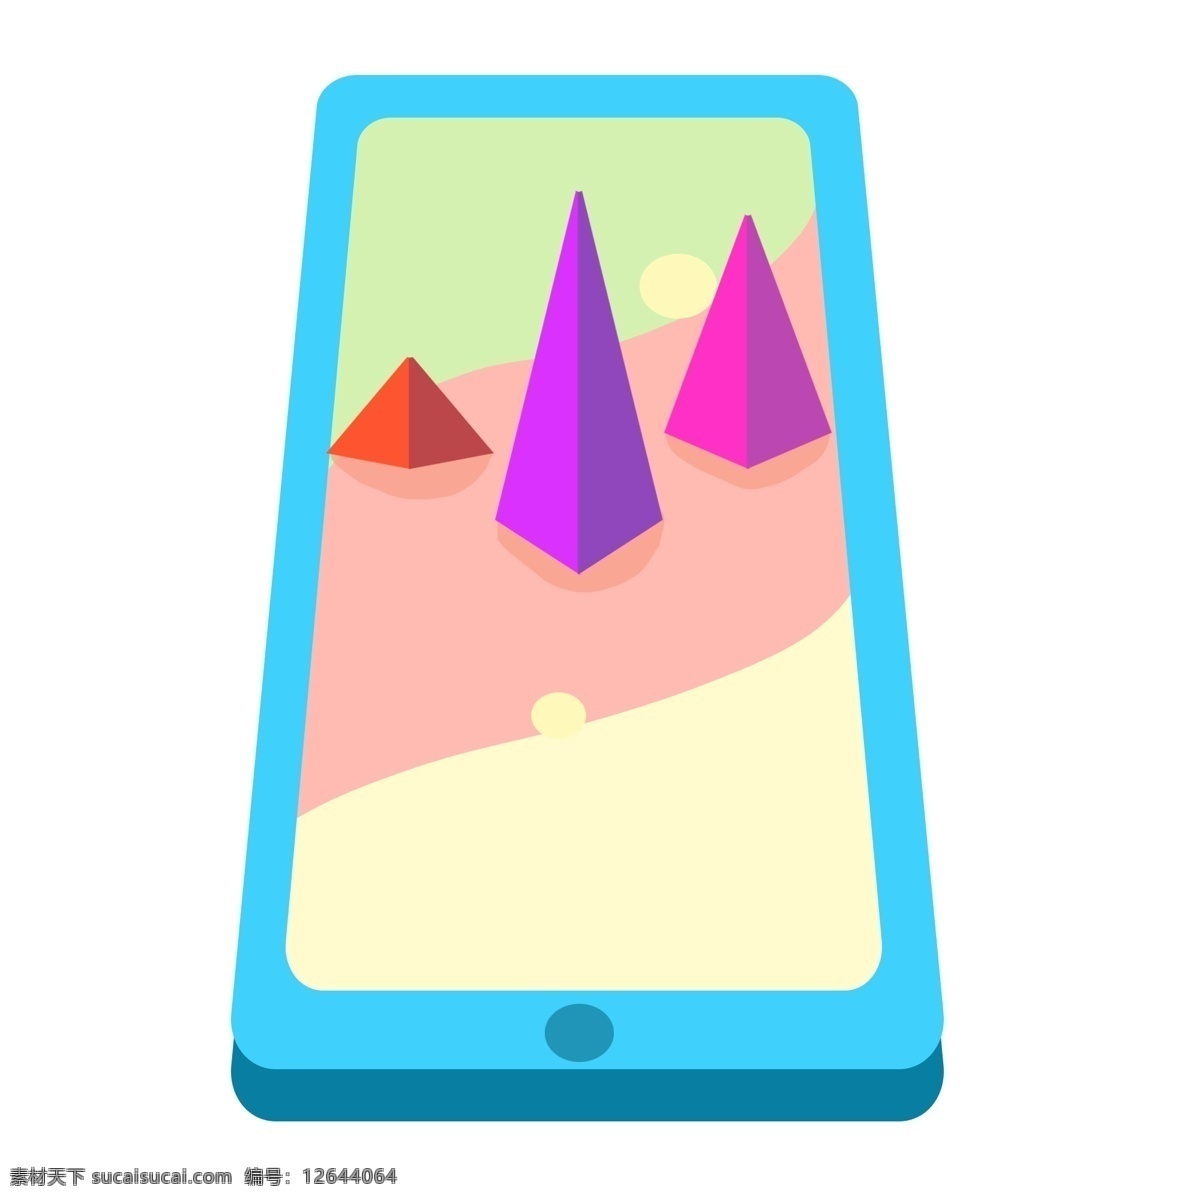 d 扁平化 立体 图表 2.5d图表 扁平化图表 立体图表 蓝色的手机 创意图表 三角形图表 图表插画